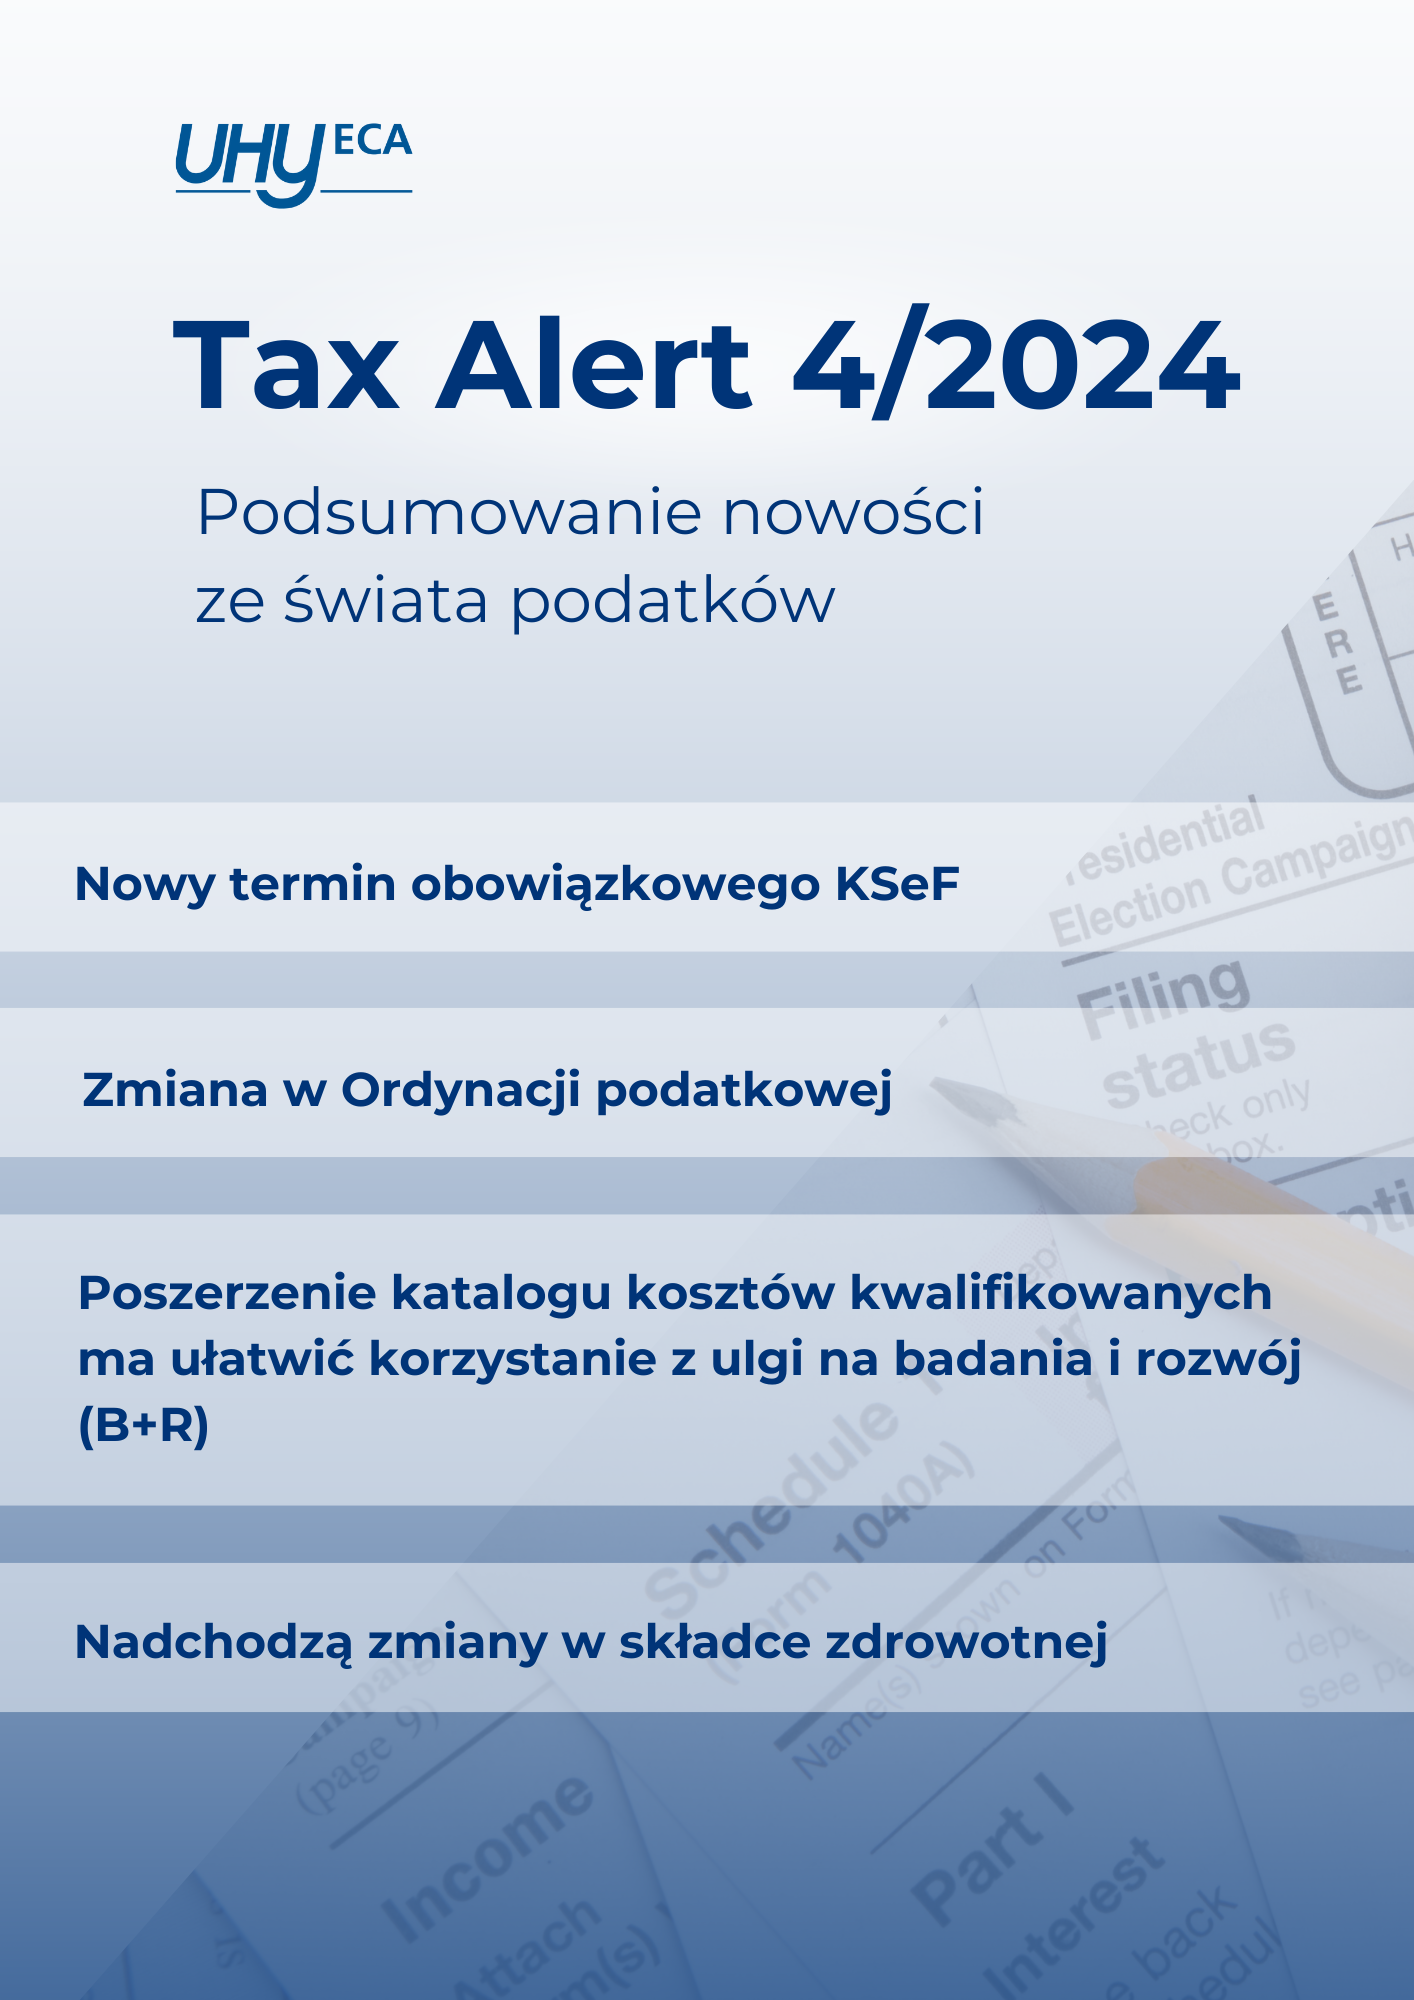 Tax Alert 04/2024 UHY ECA Podsumowanie nowości ze świata podatków